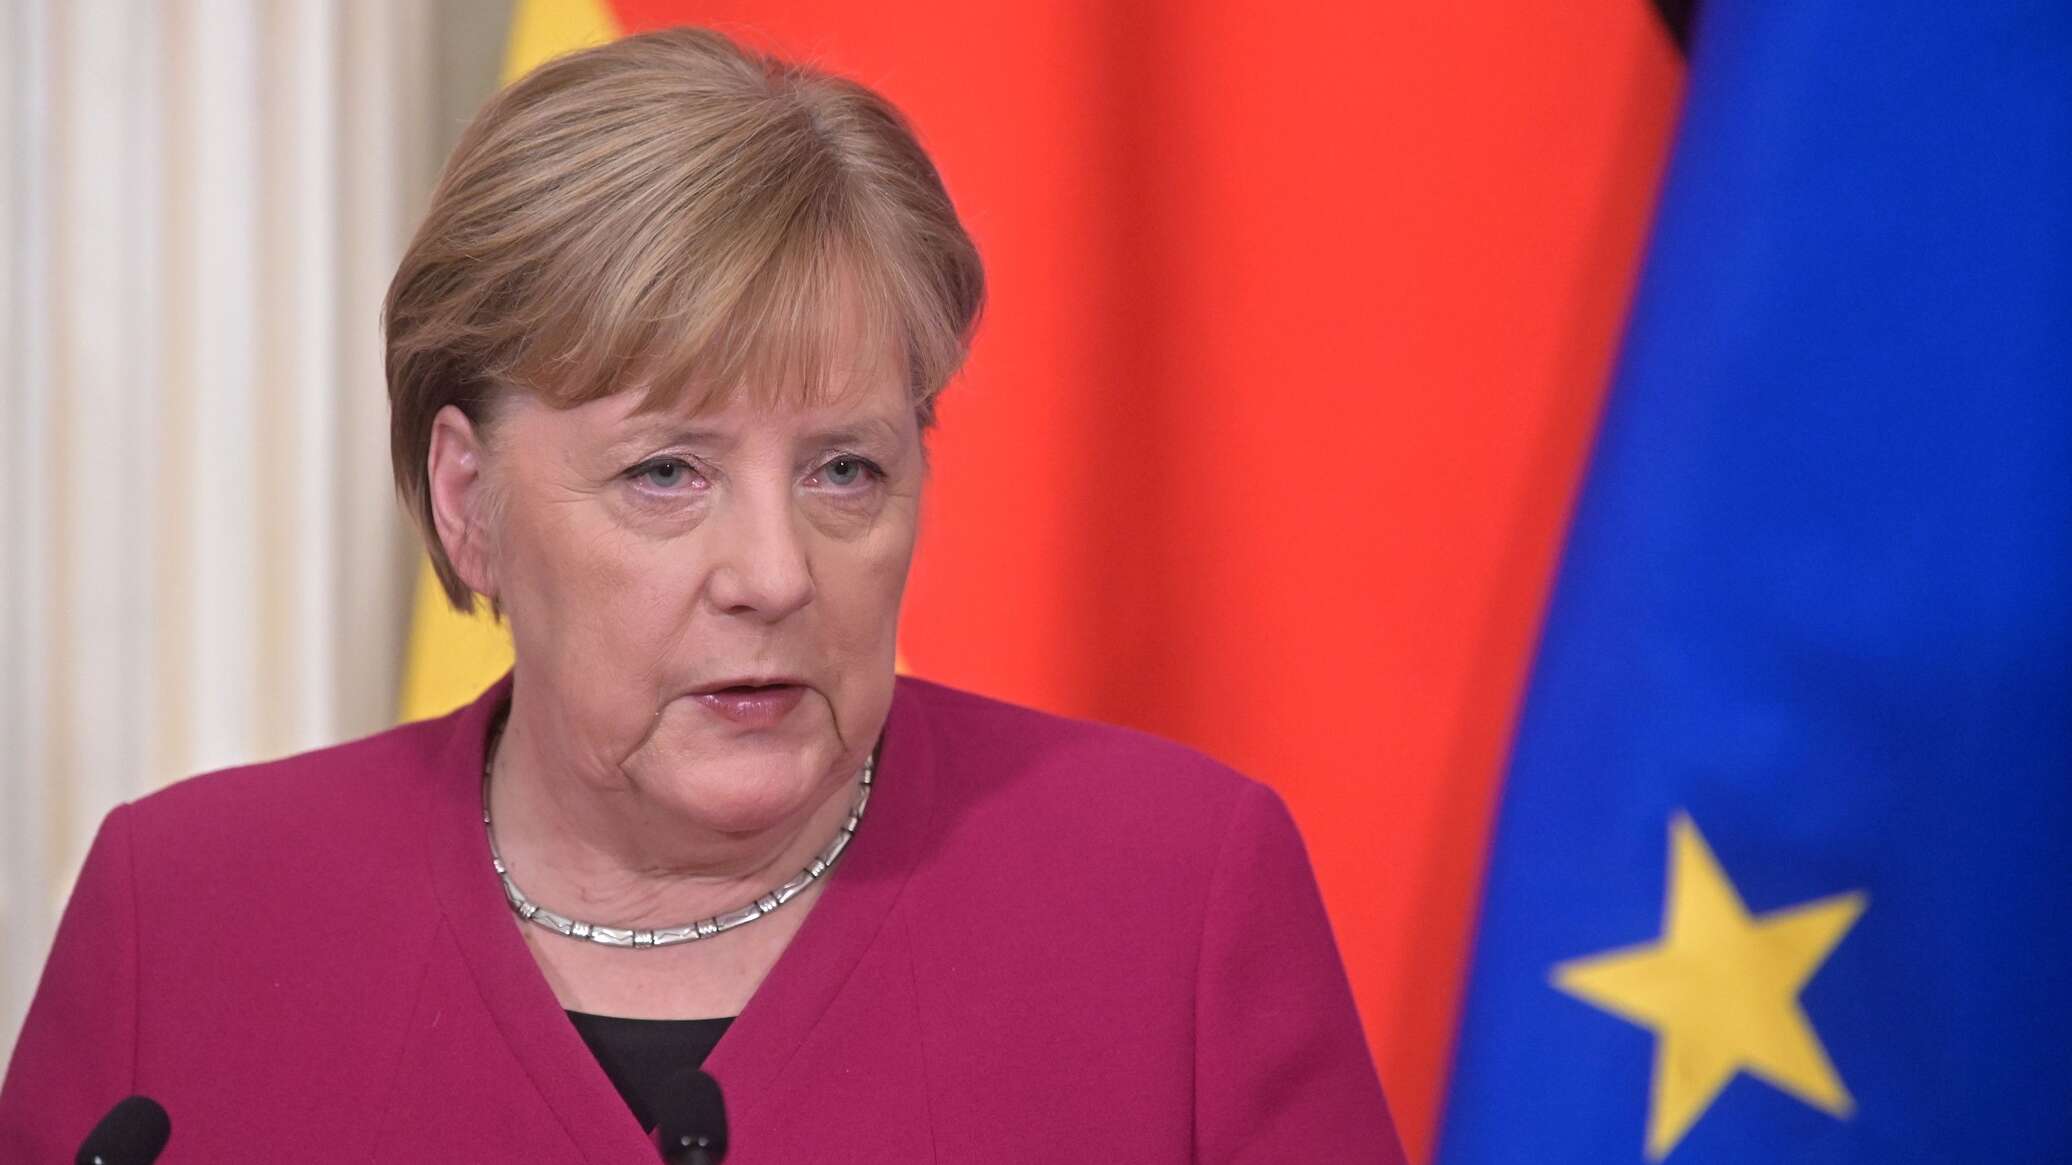 Меркель посетила затопленные районы: "В немецком нет слов, чтобы описать это" 